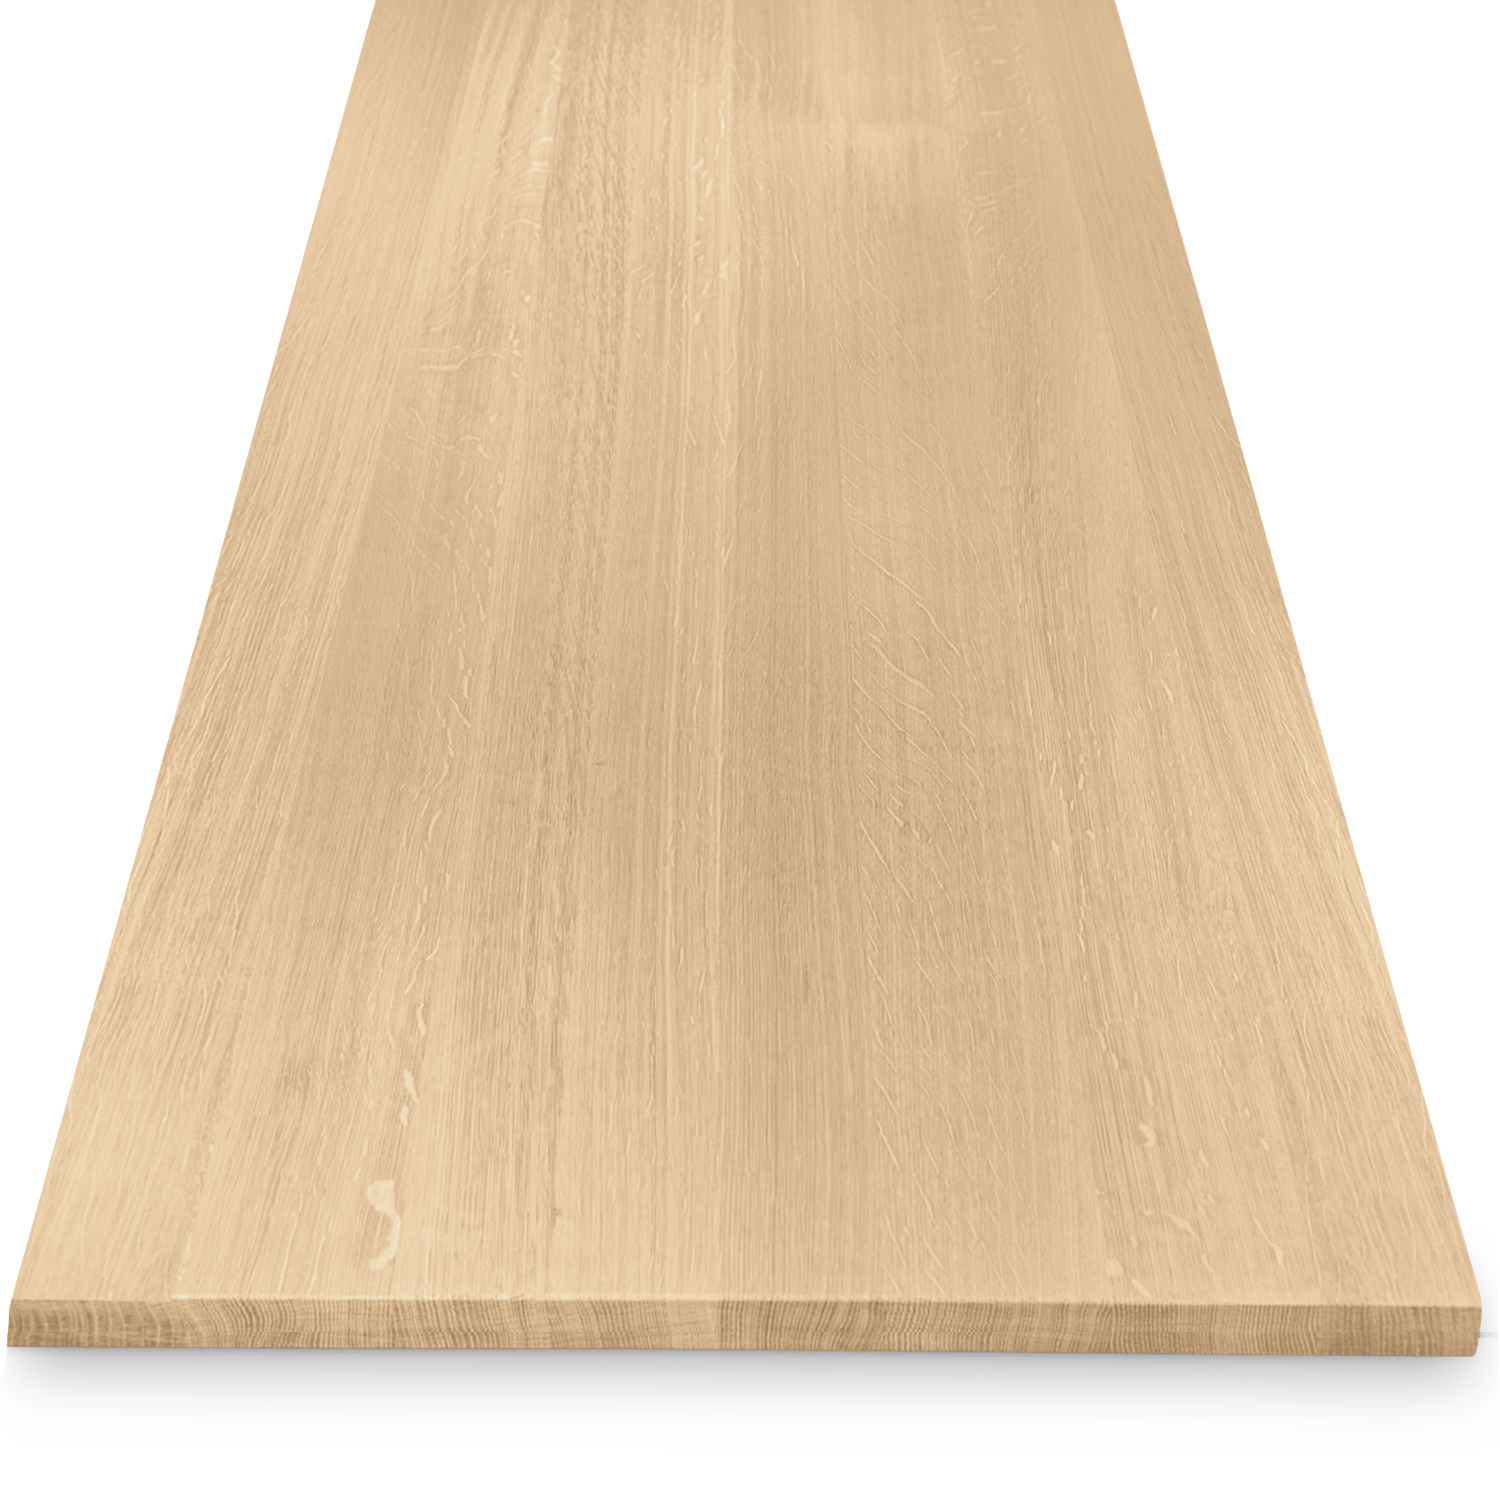  Tischplatte Eiche - 2,7 cm dick (1-Schicht) - Breite Lamellen (10 - 12 cm breit) - Eichenholz A-Qualität - verleimt & künstlich getrocknet (HF 8-12%) - verschiedene Größen